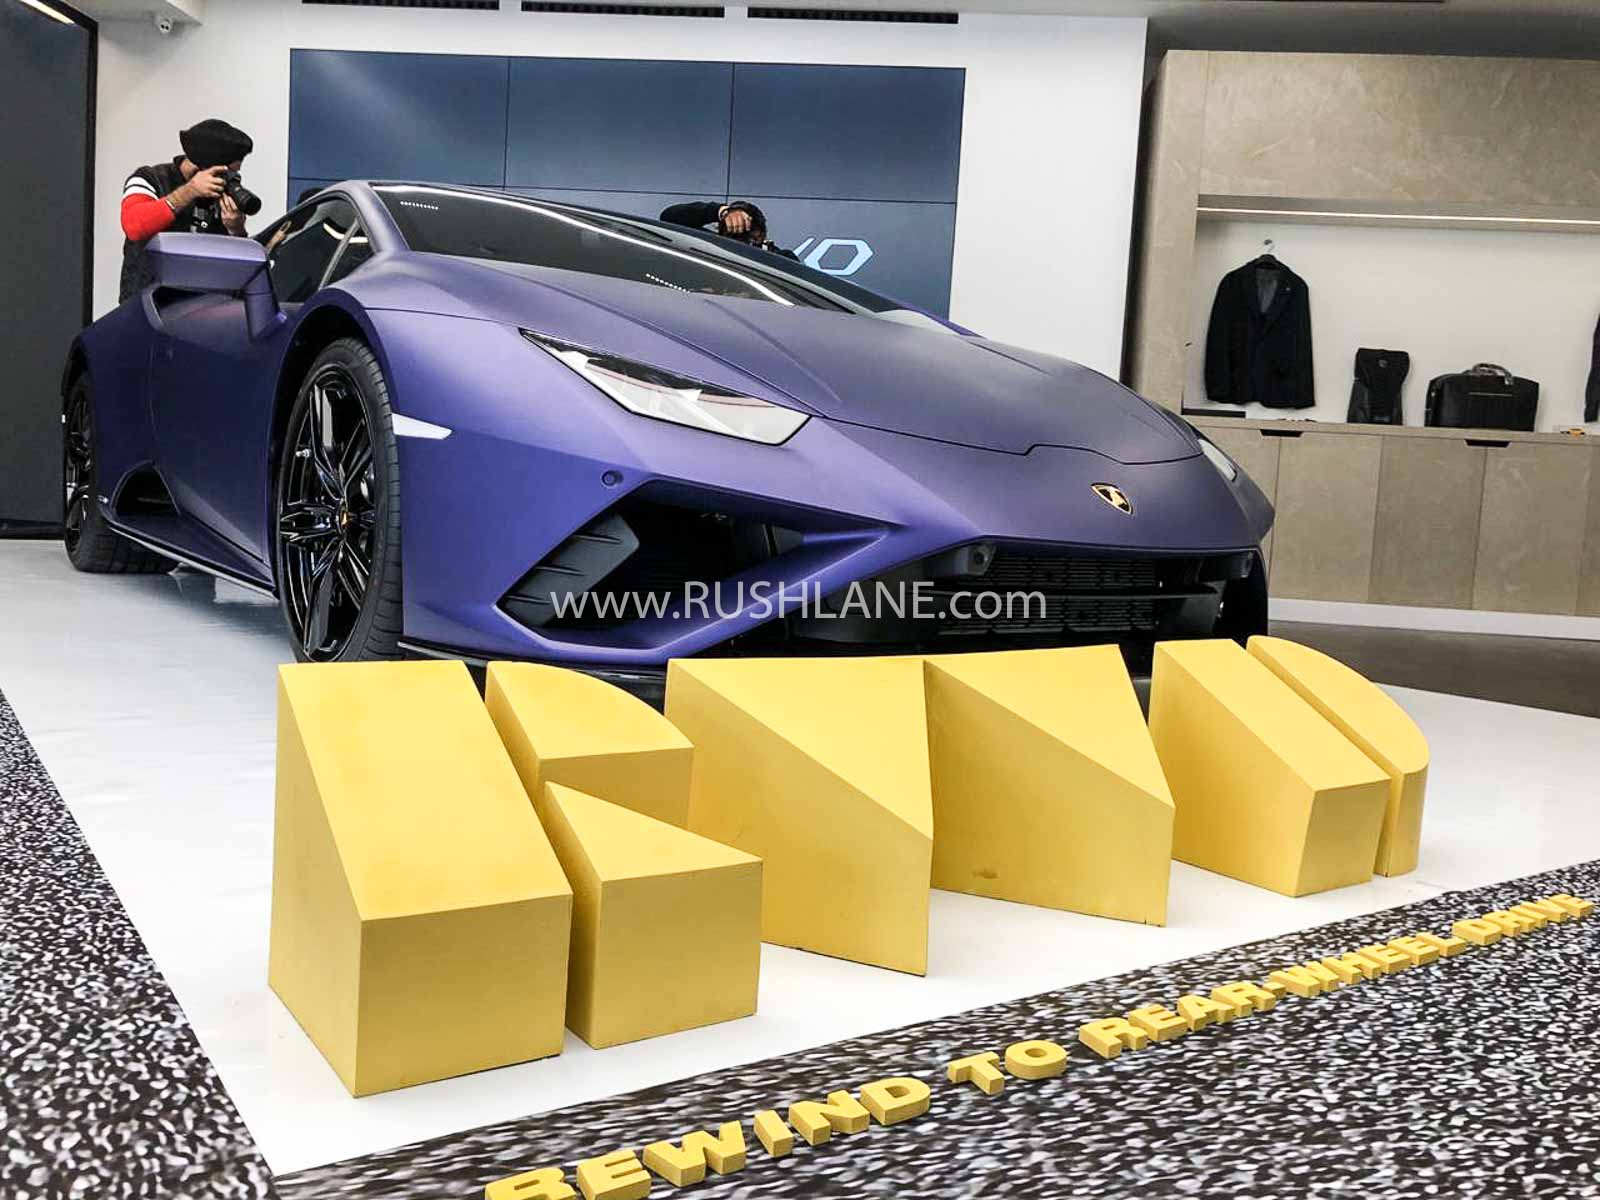 Lamborghini Huracan RWD launch price Rs 3.22 cr - 0 to 100 ...